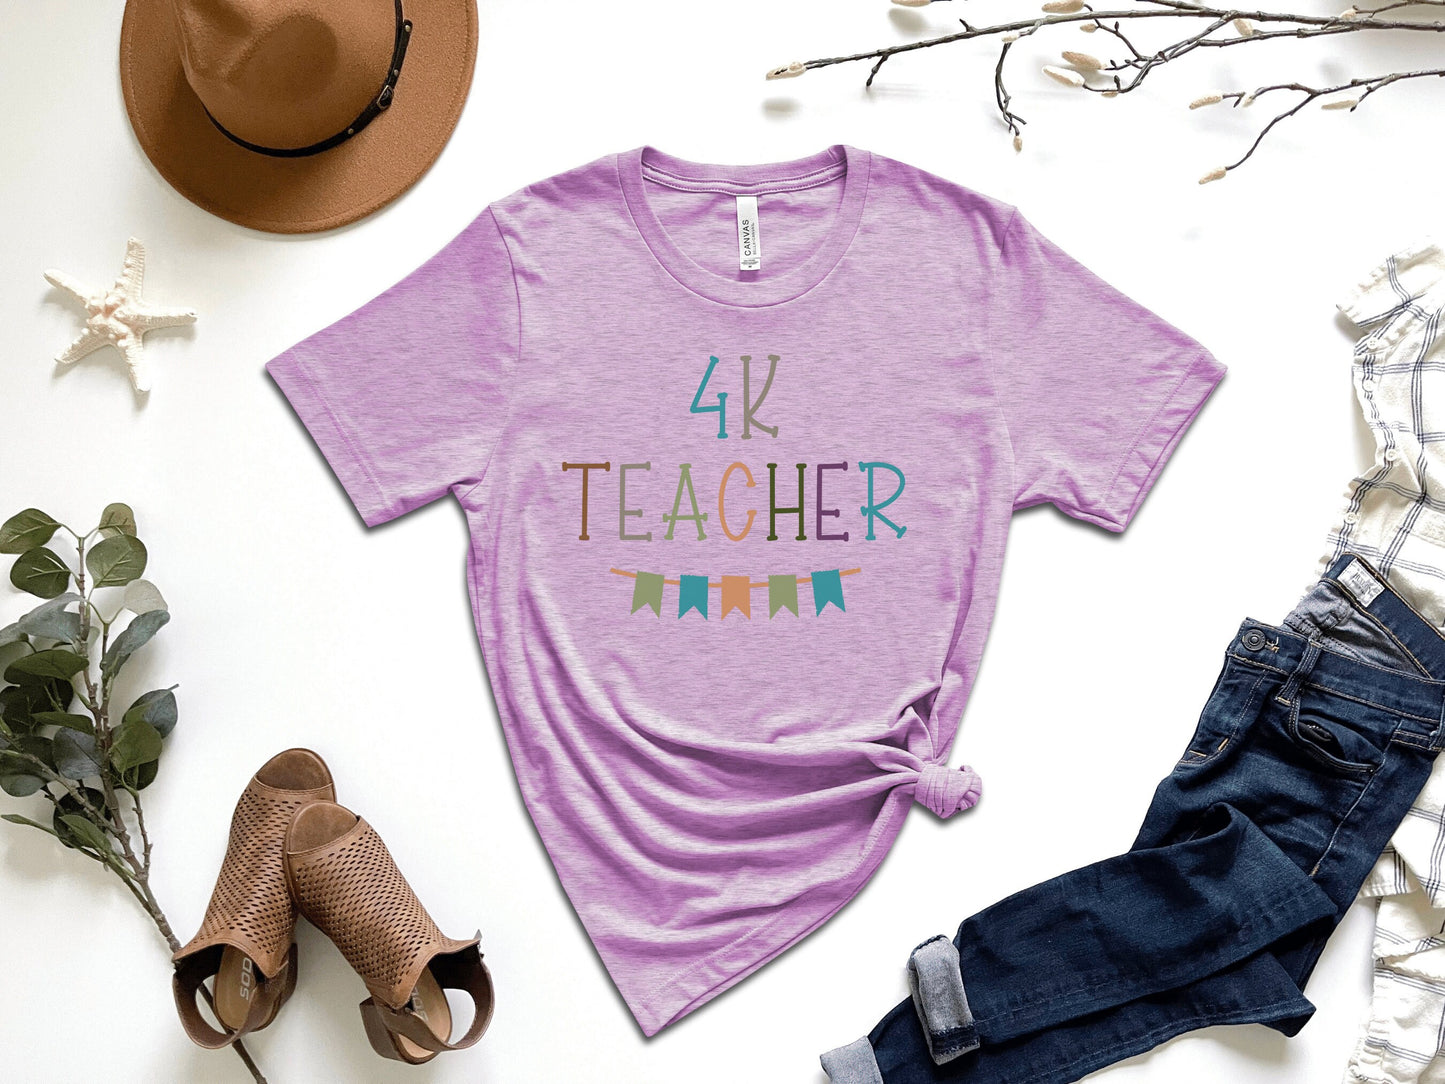 4K Teacher Shirt, 4K Lead Teacher, Four Year Old Kindergarten Teacher Shirt